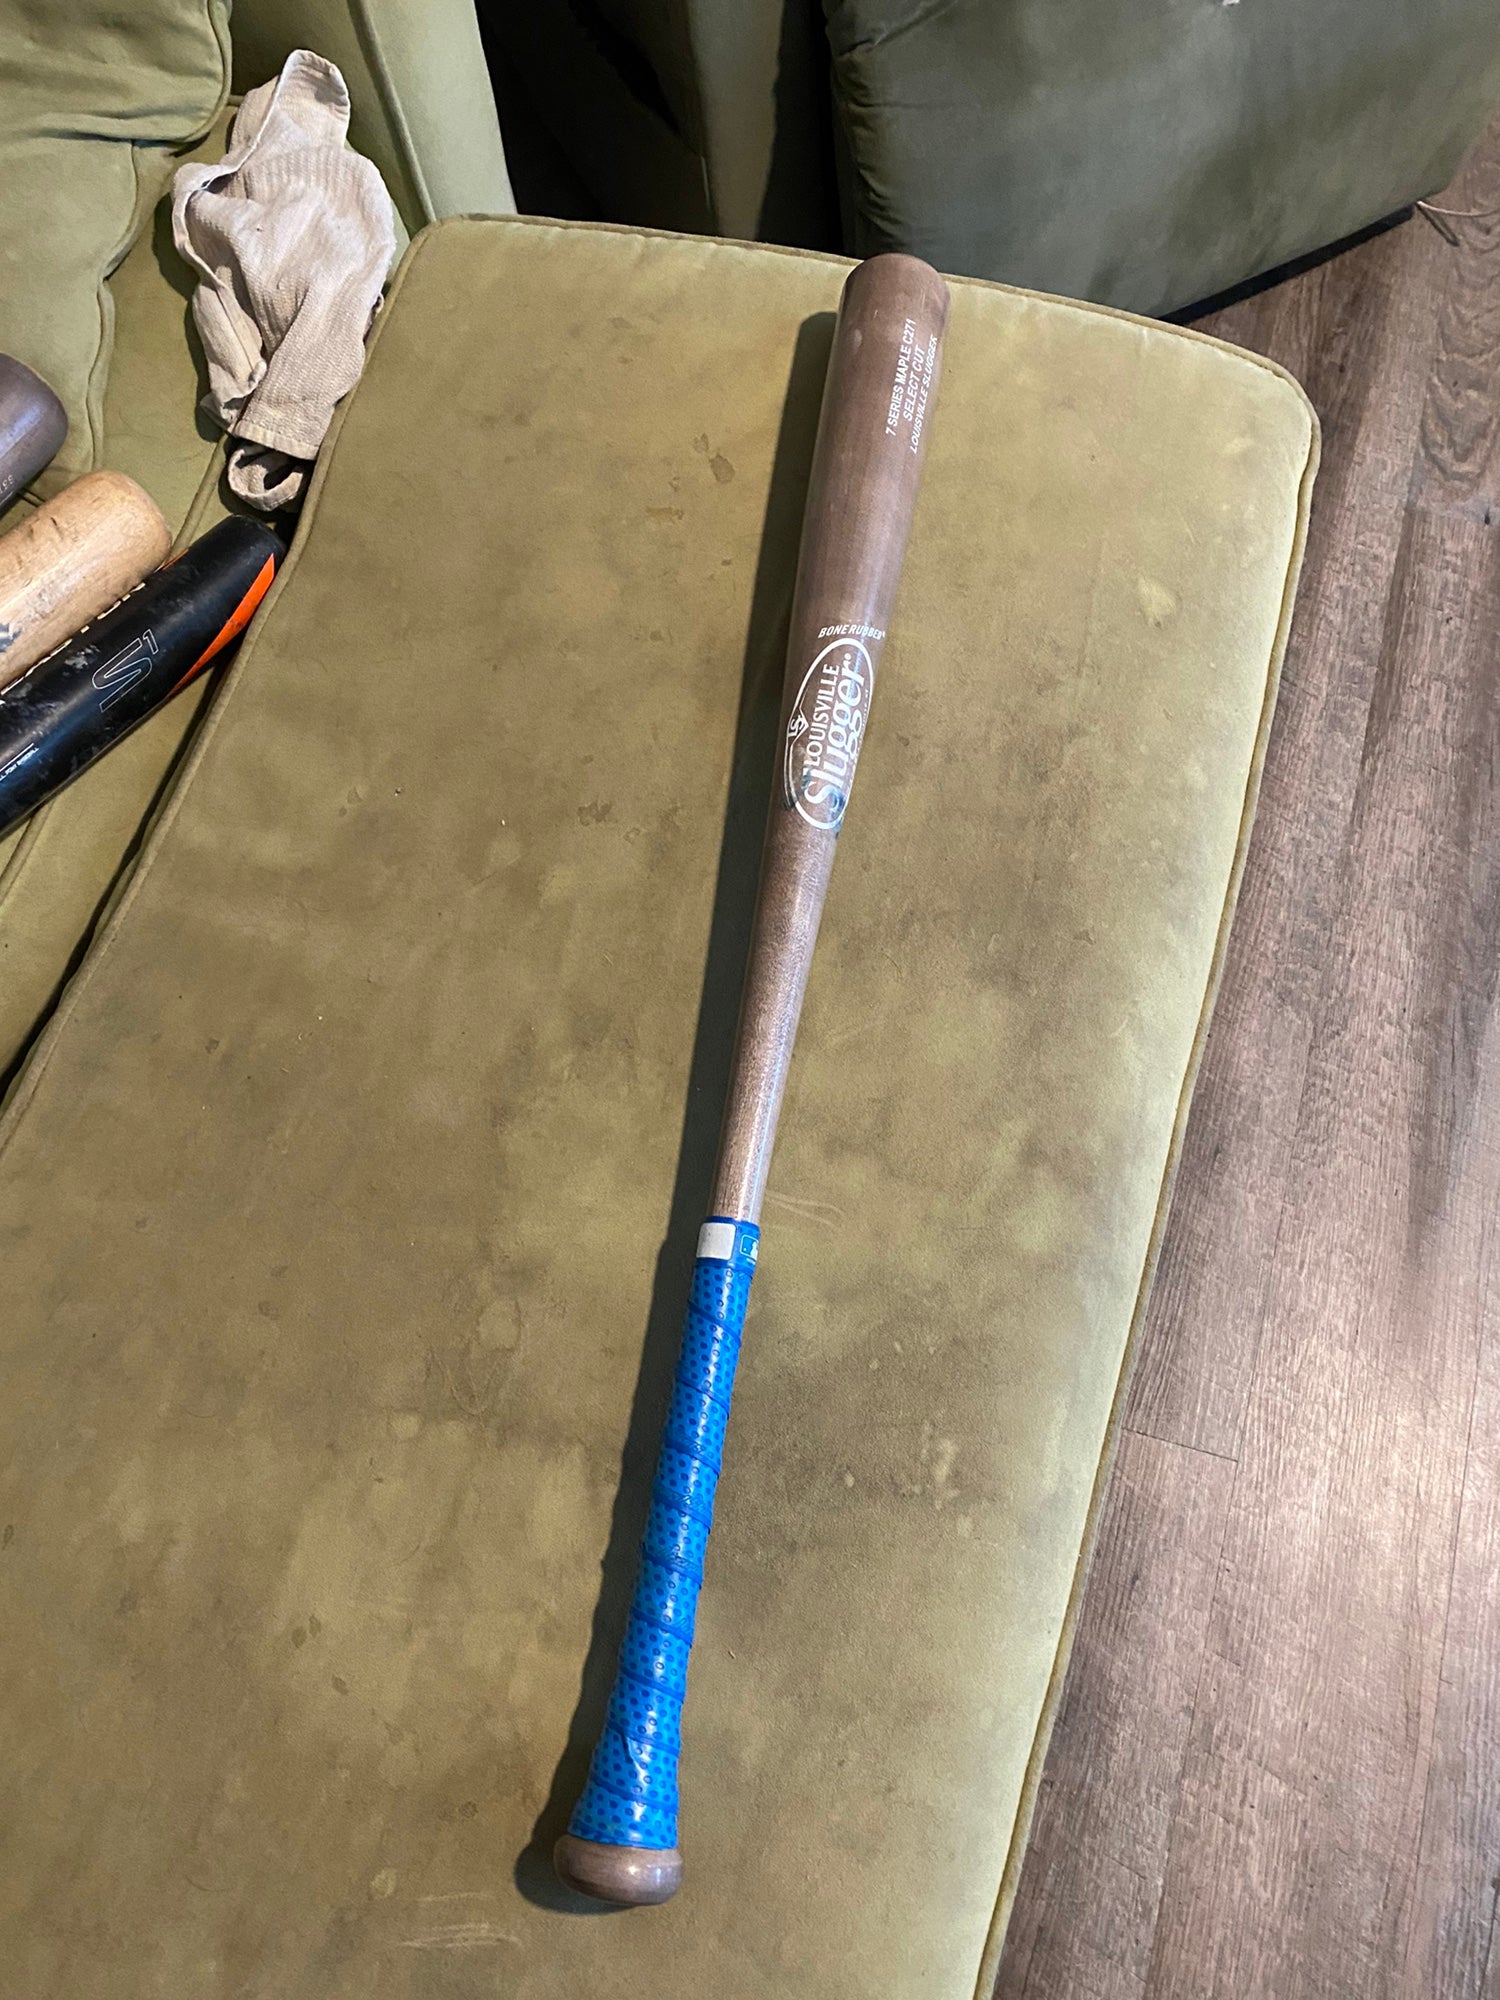 Used Louisville Slugger Maple Genuine Maple Series Bat (-3) 29 oz 32